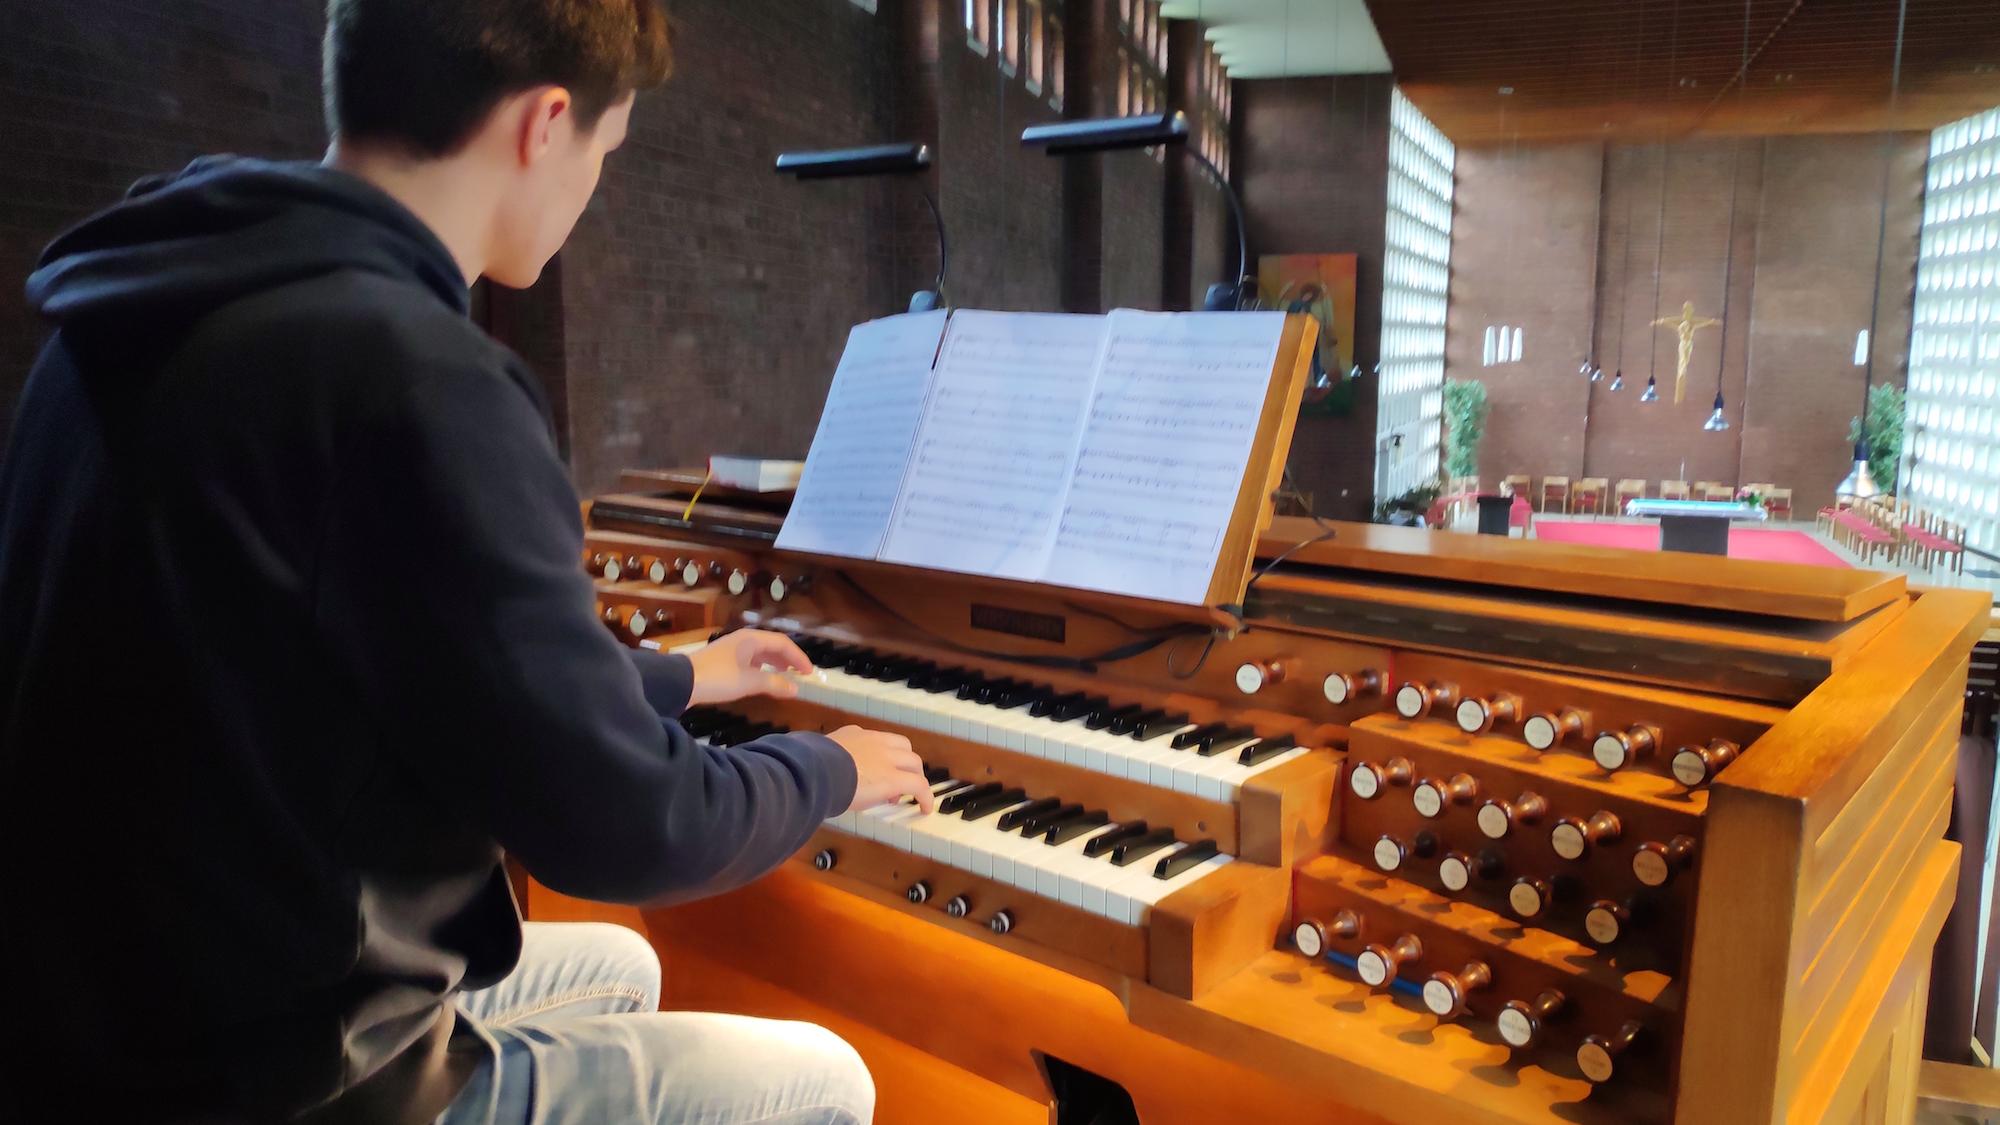 Kirche ohne Orgelmusik könne er sich nicht vorstellen, erzählt der  15-jährige Felix. (c) Ann-Katrin Roscheck